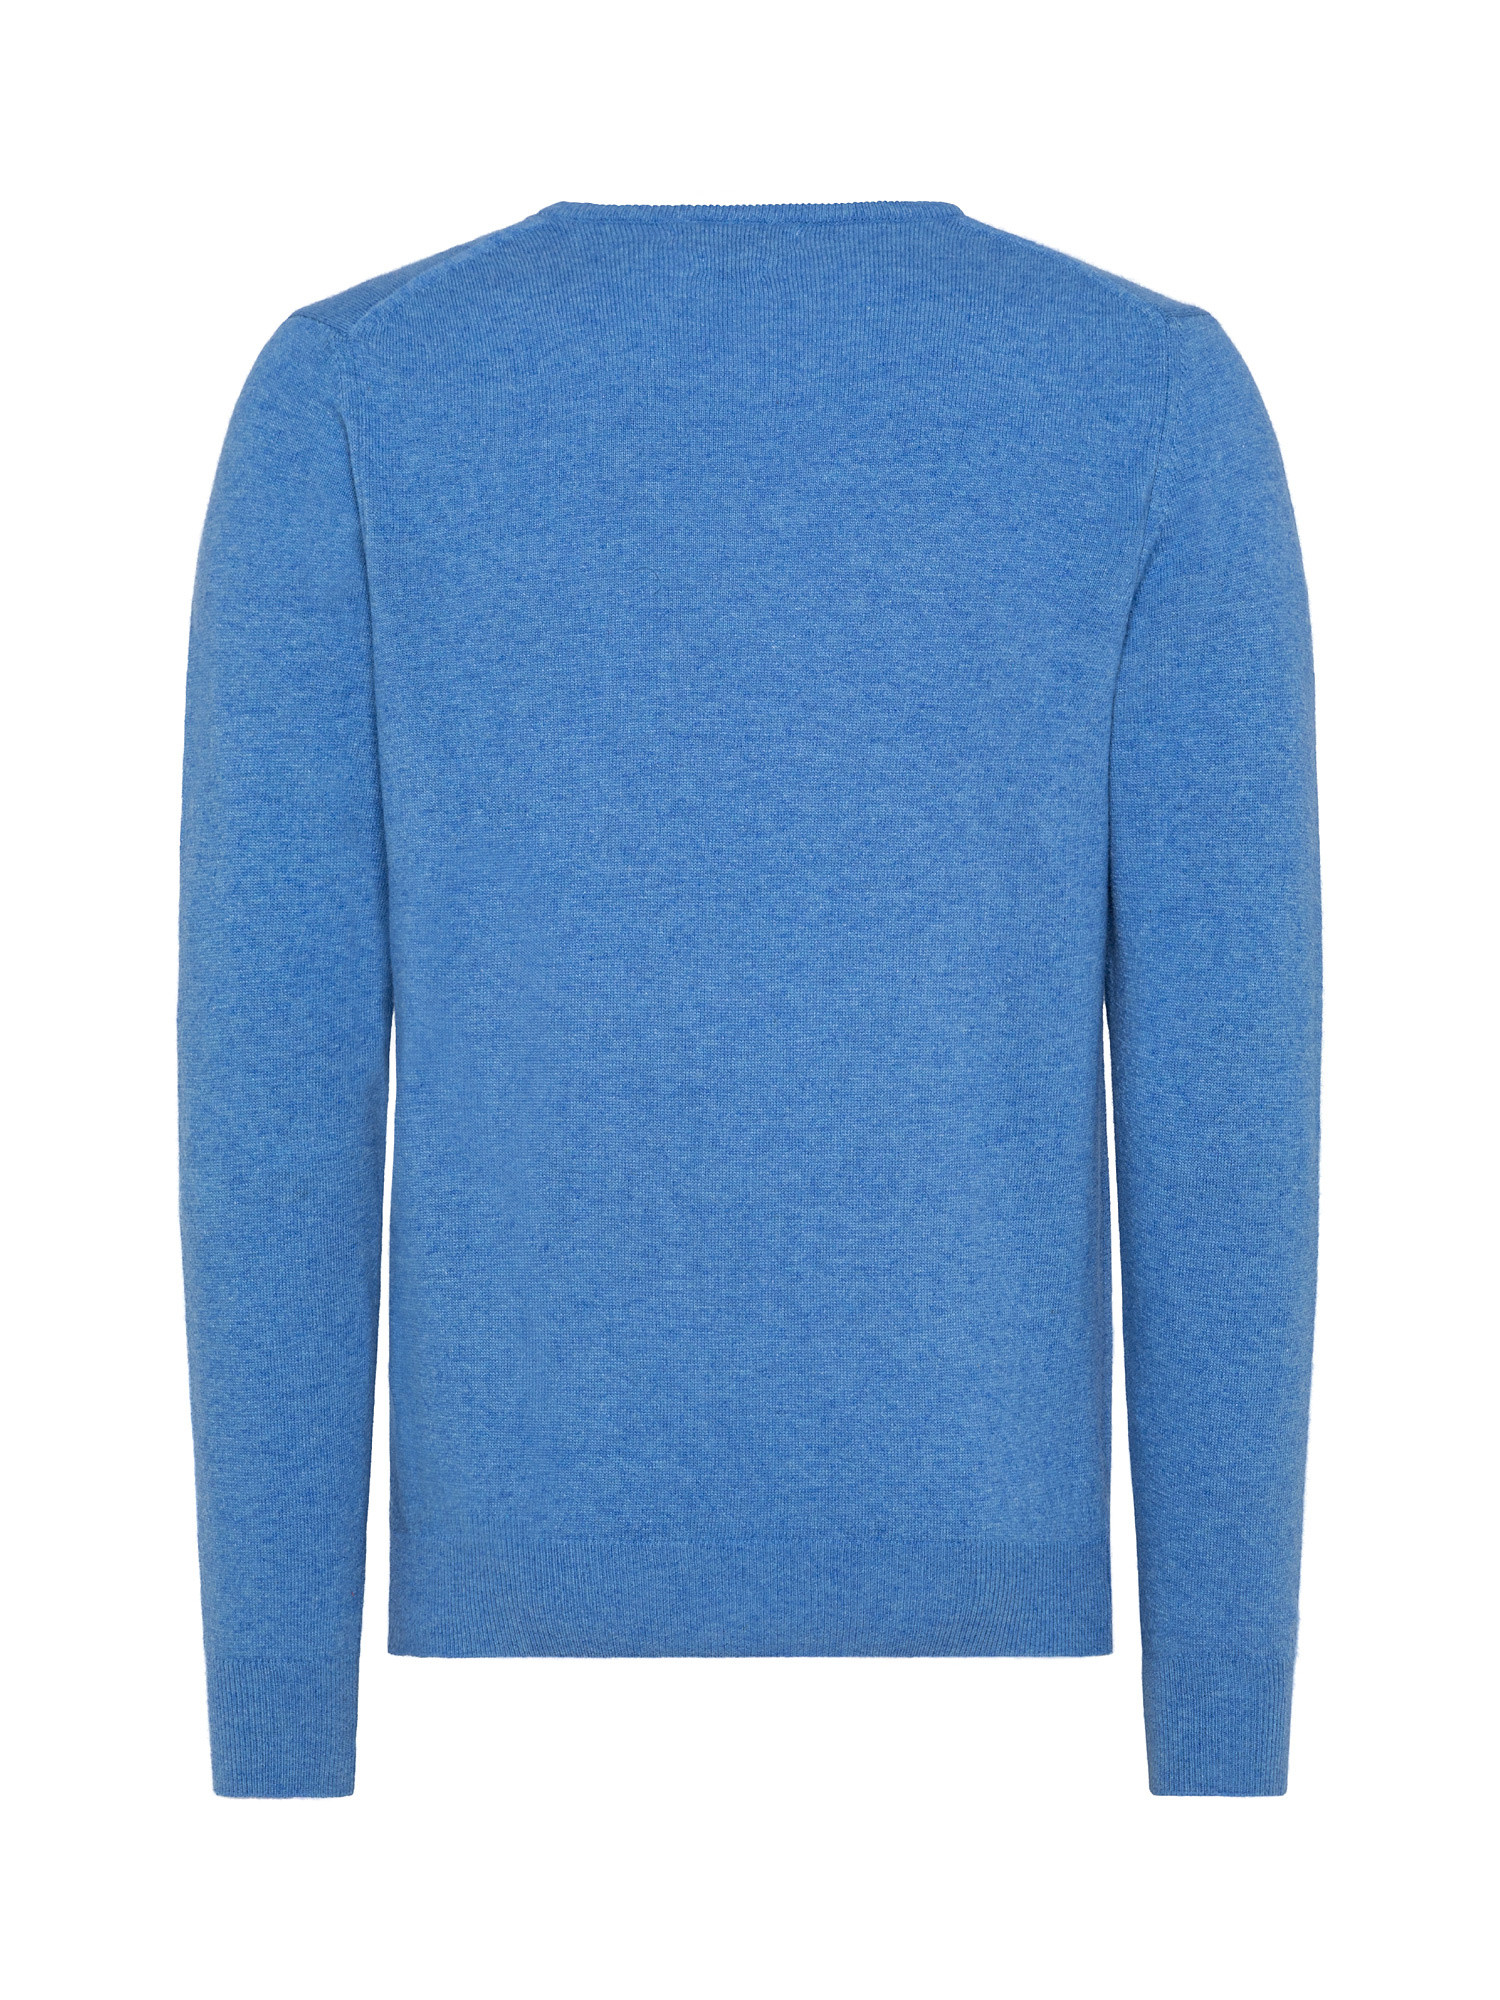 Basic cashmere blend pullover, Light Blue, large image number 1